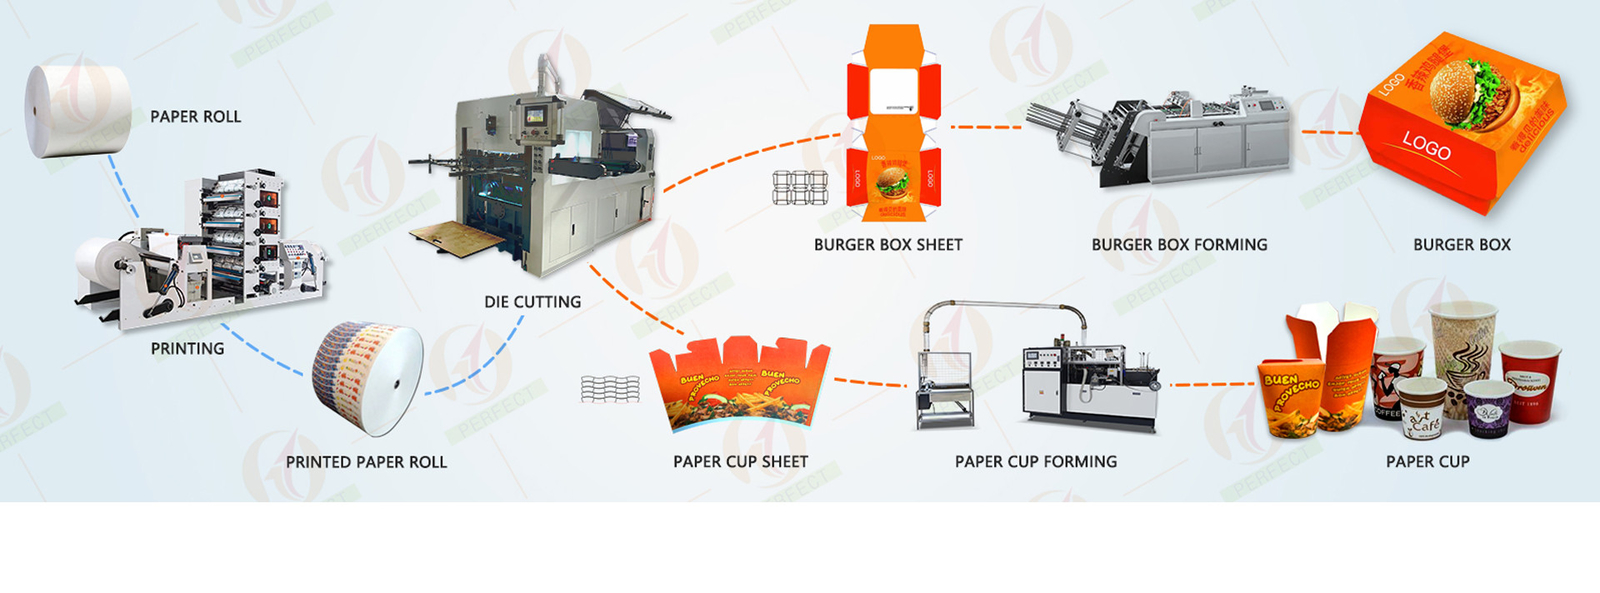 جودة ماكينات صنع الأكواب الورقية مصنع